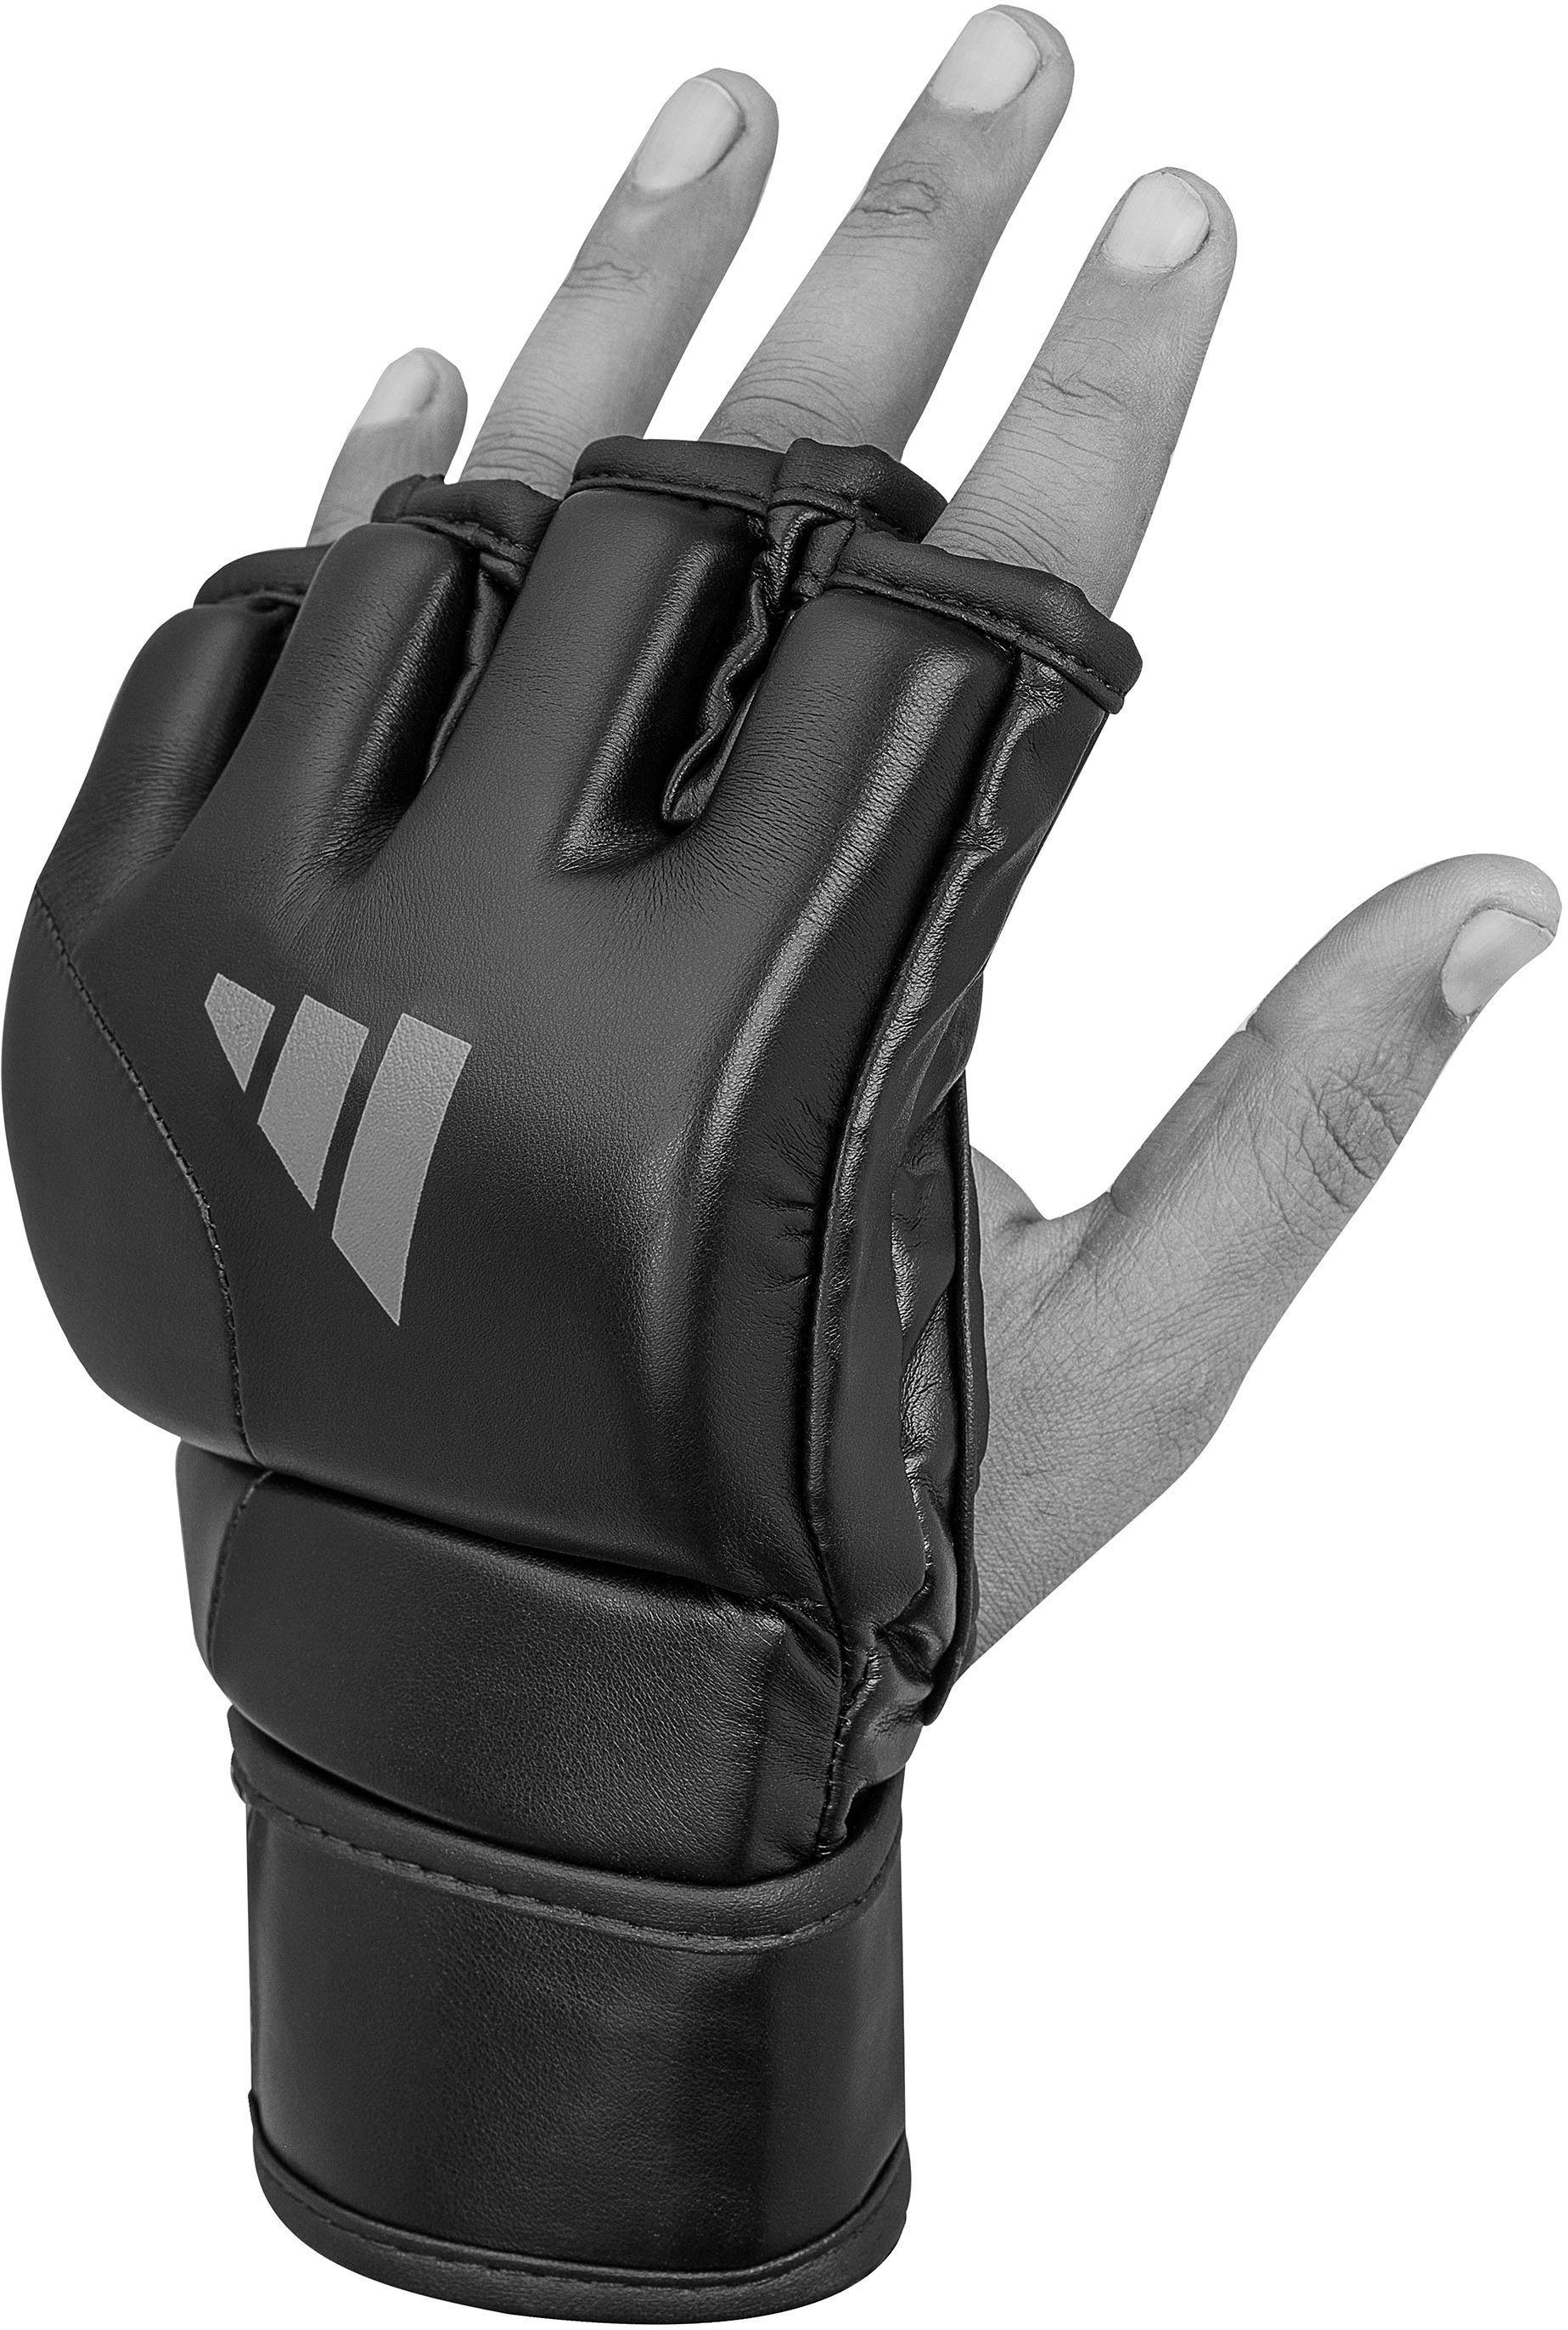 MMA-Handschuhe Tilt Speed G150 Performance adidas